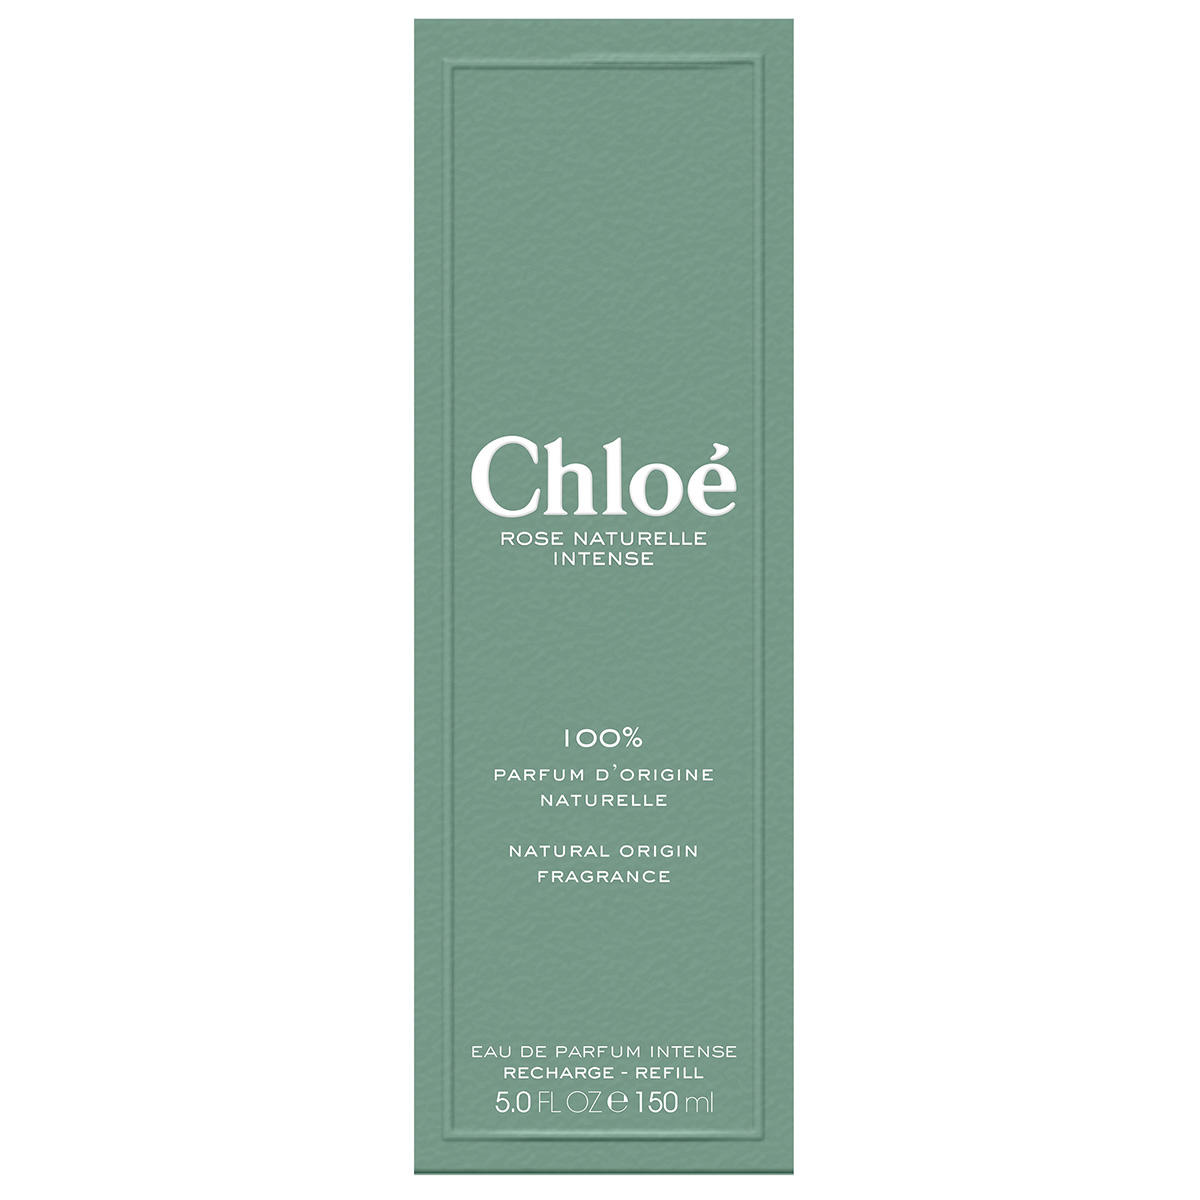 Chloé Rose Naturelle Intense Eau de Parfum Refill 150 ml - 3